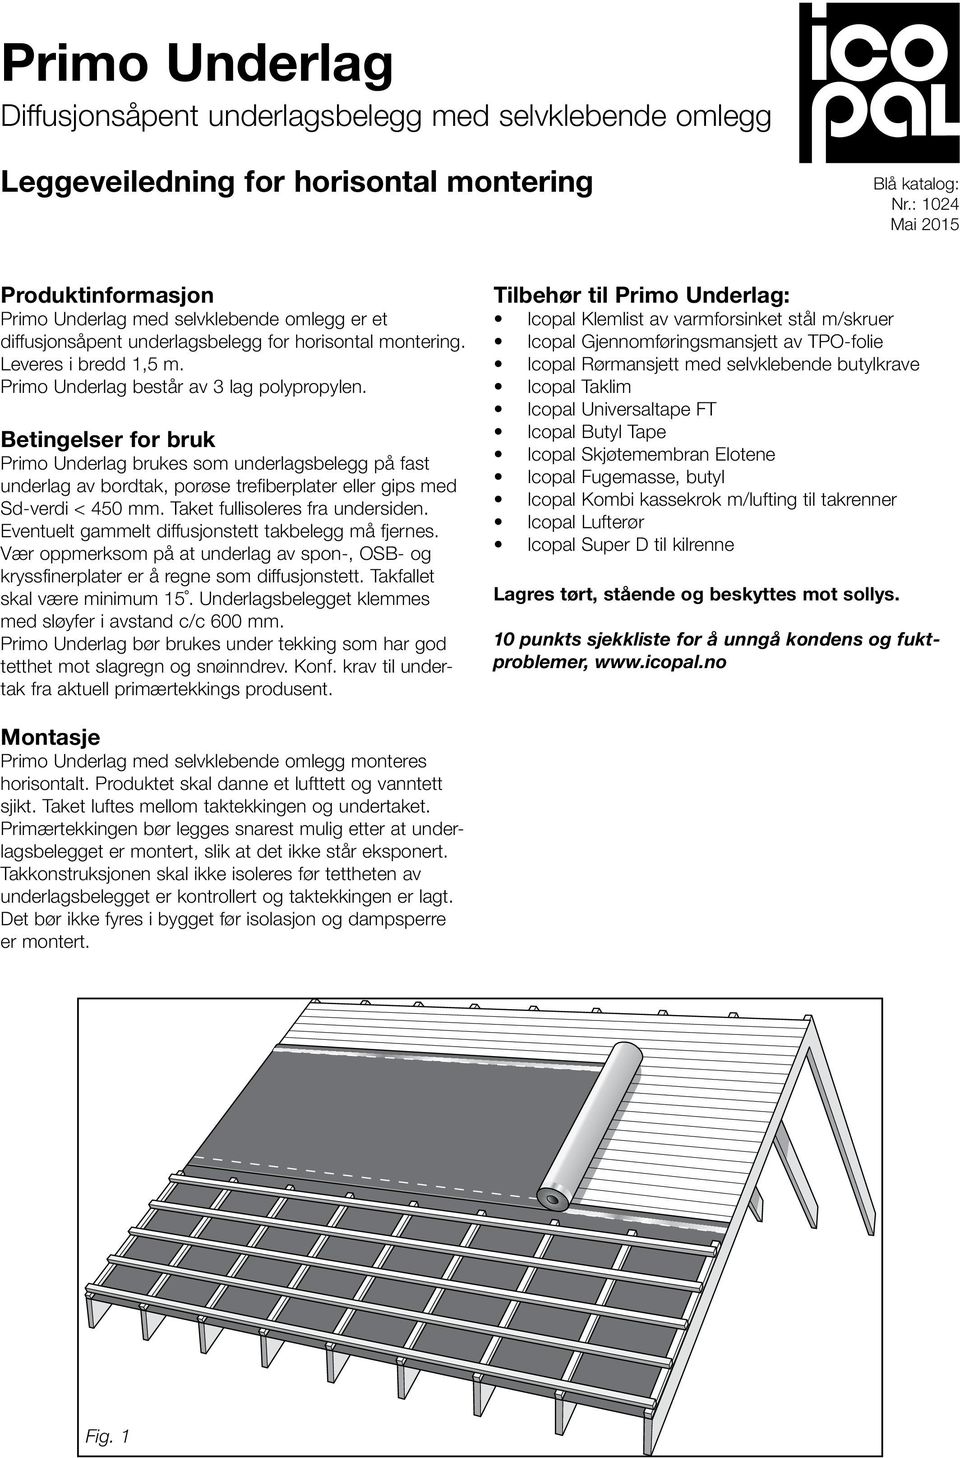 Primo Underlag består av 3 lag polypropylen. Betingelser for bruk Primo Underlag brukes som underlagsbelegg på fast underlag av bordtak, porøse trefiberplater eller gips med Sd-verdi < 450 mm.